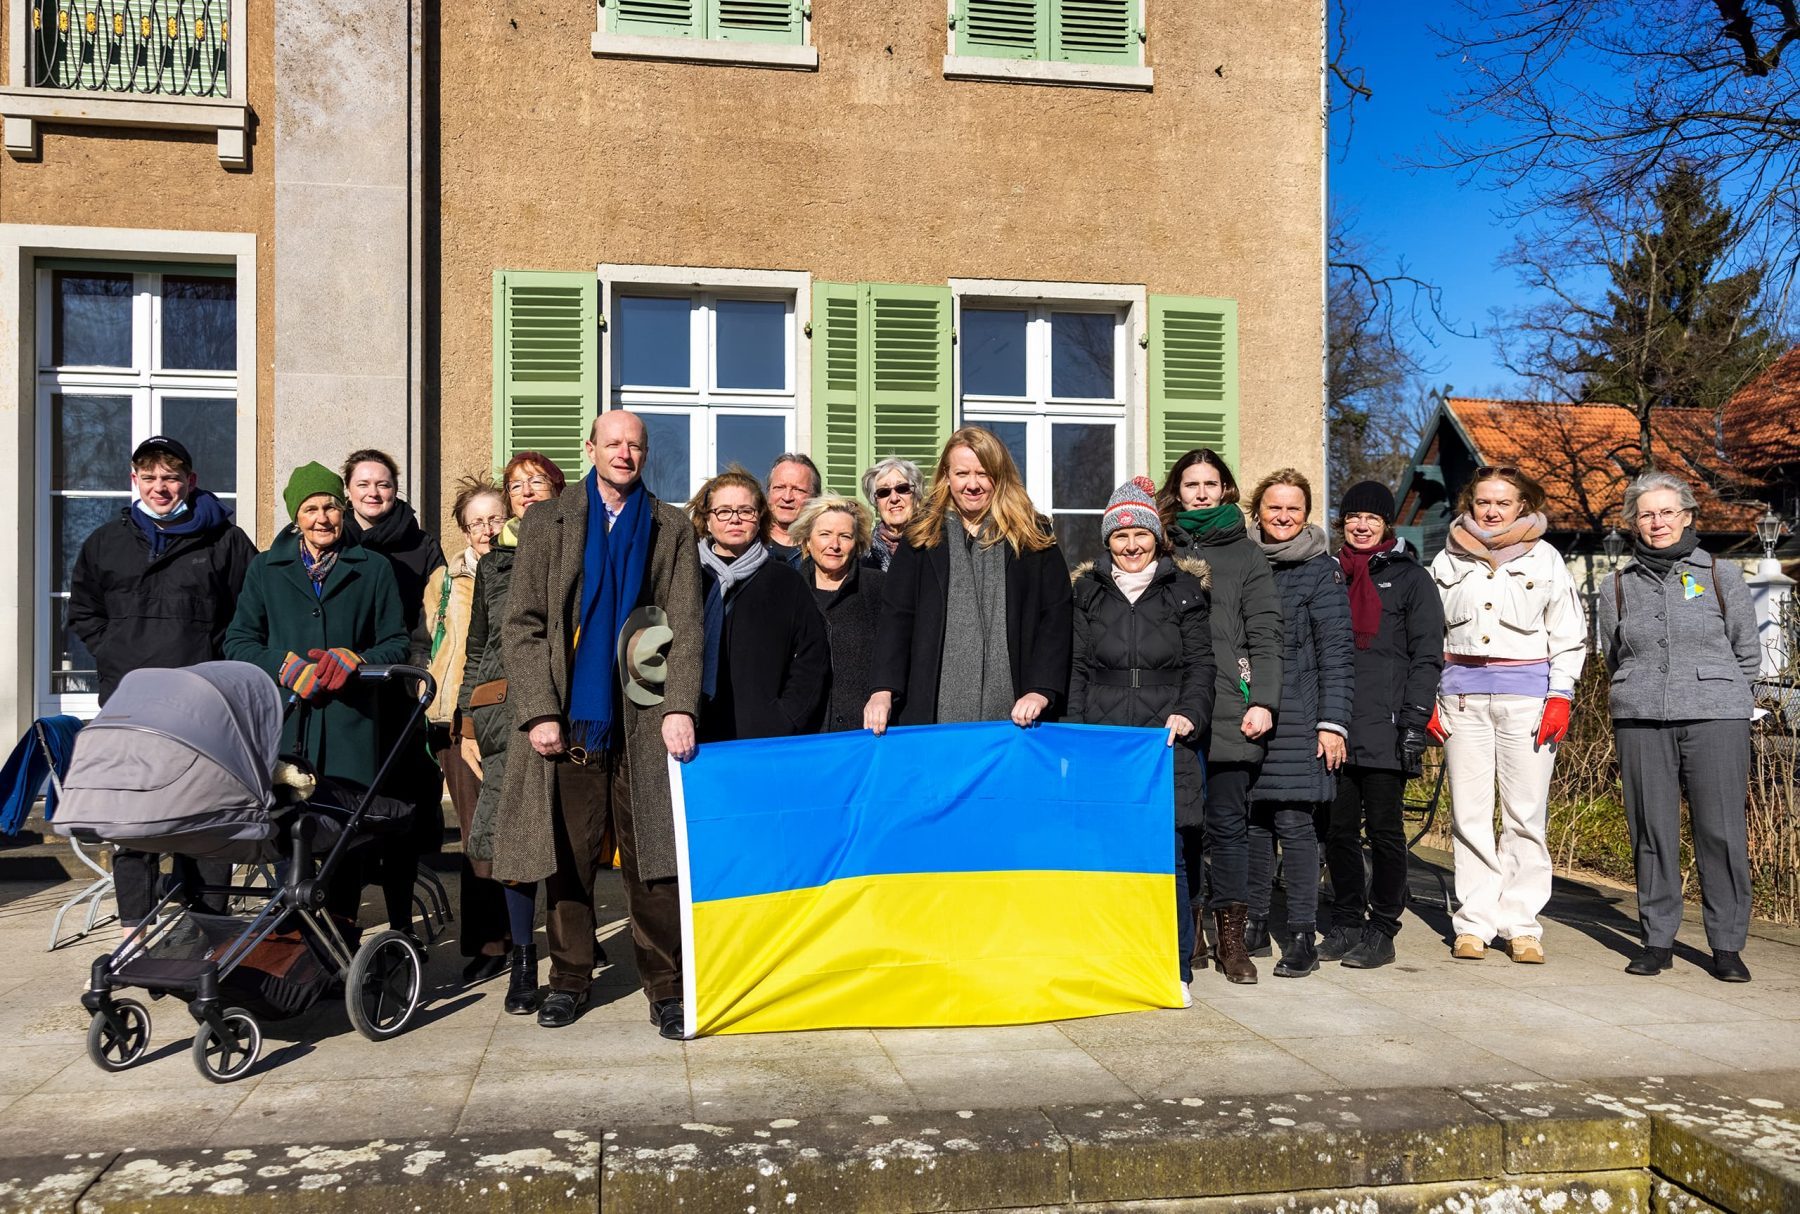 Gruppenfoto von mehreren Personen, die im Vordergrund eine ukrainische Flagge mit Blau und gelben Streifen halten.